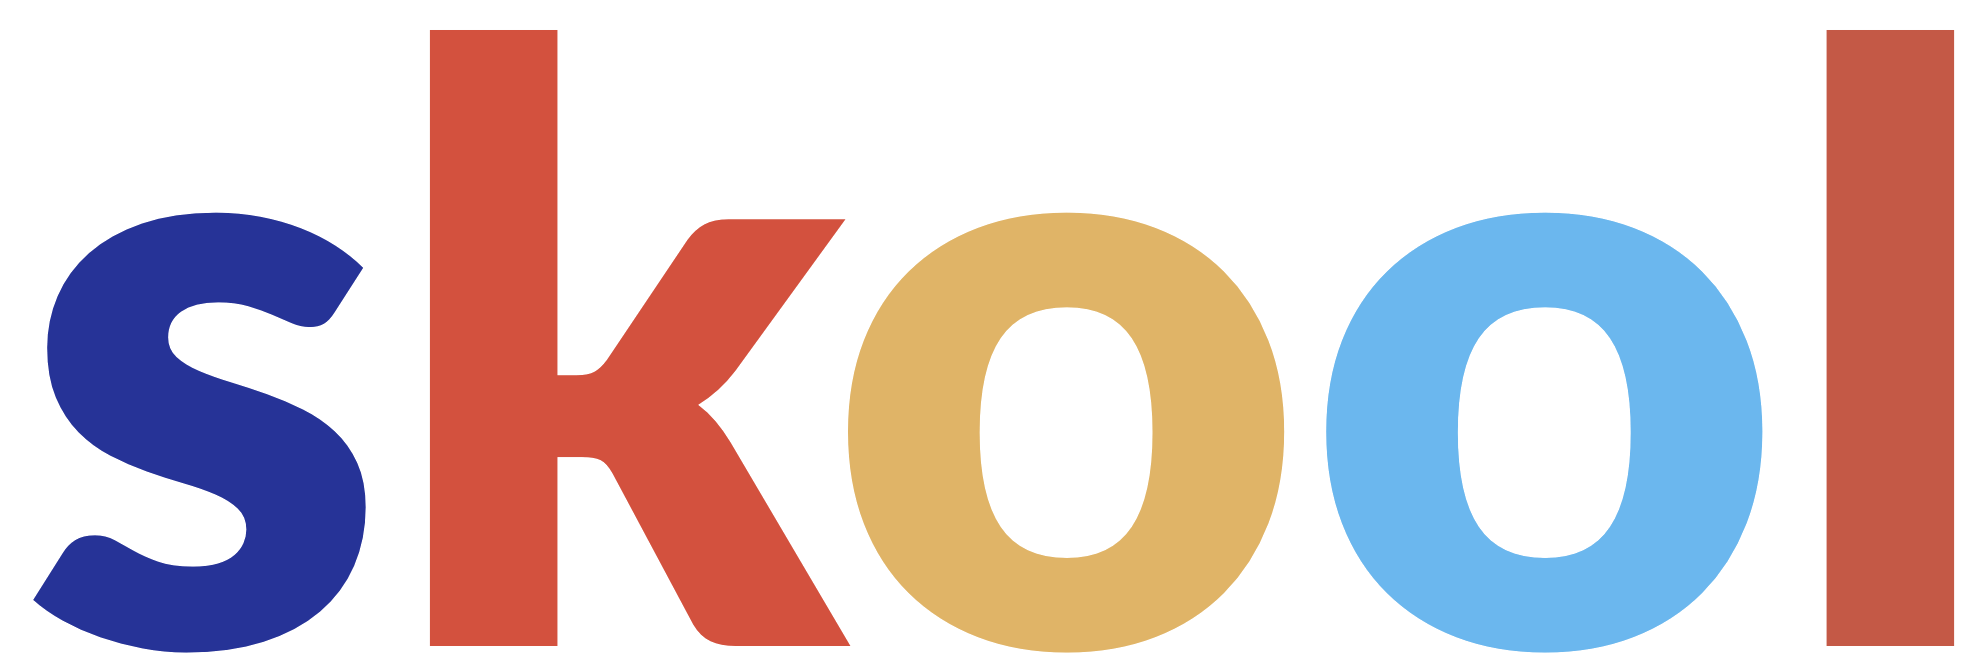 skool-logo